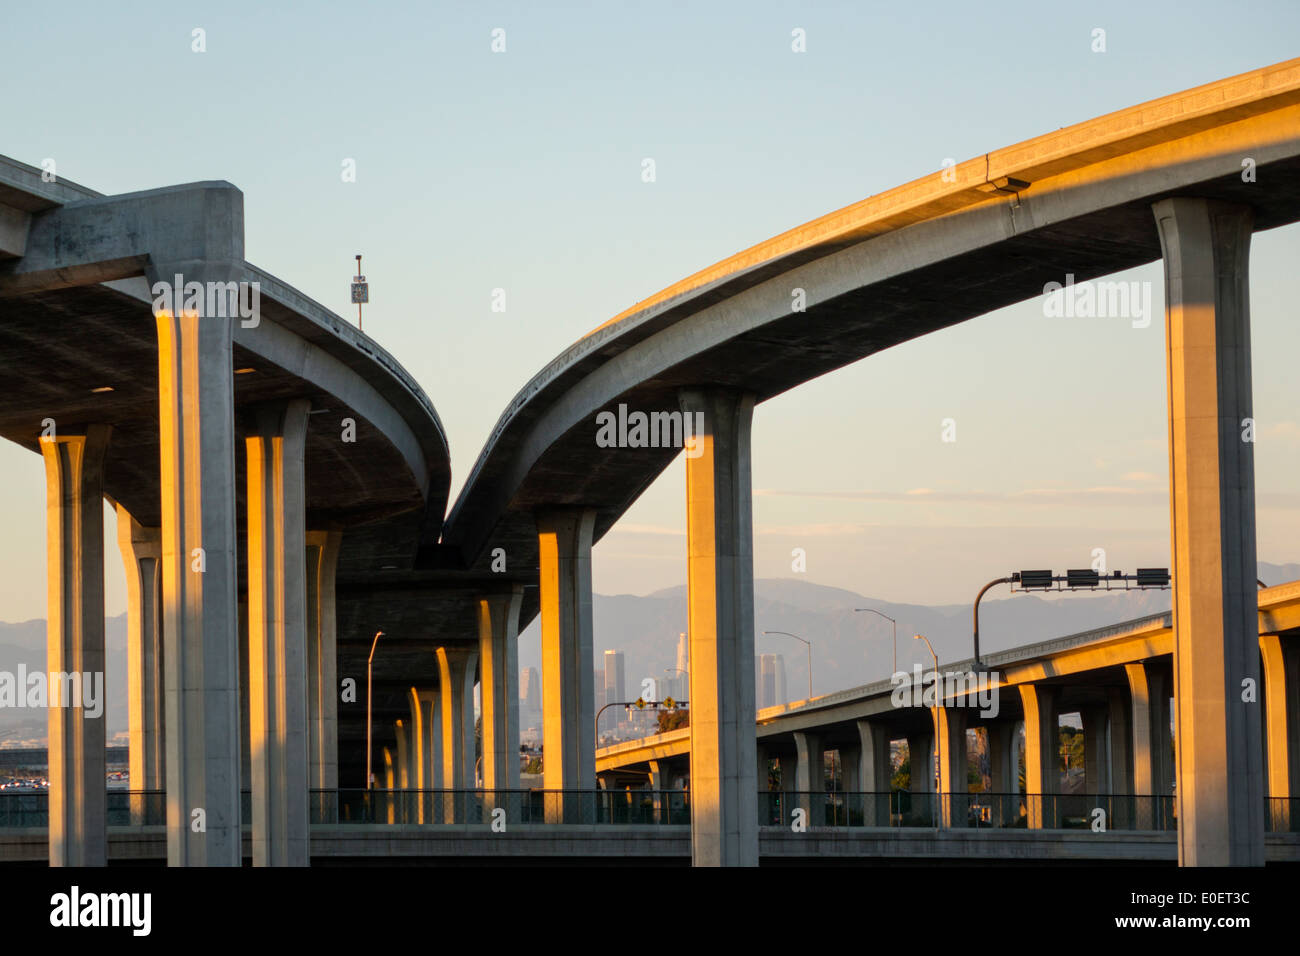 Los Angeles Californie, Interstate 110 105, I-110 I-105, Harbour Freeway, autoroute, pont autoroutier, autoroute, échangeur, jonction, chaussée surélevée, courbe, sup Banque D'Images